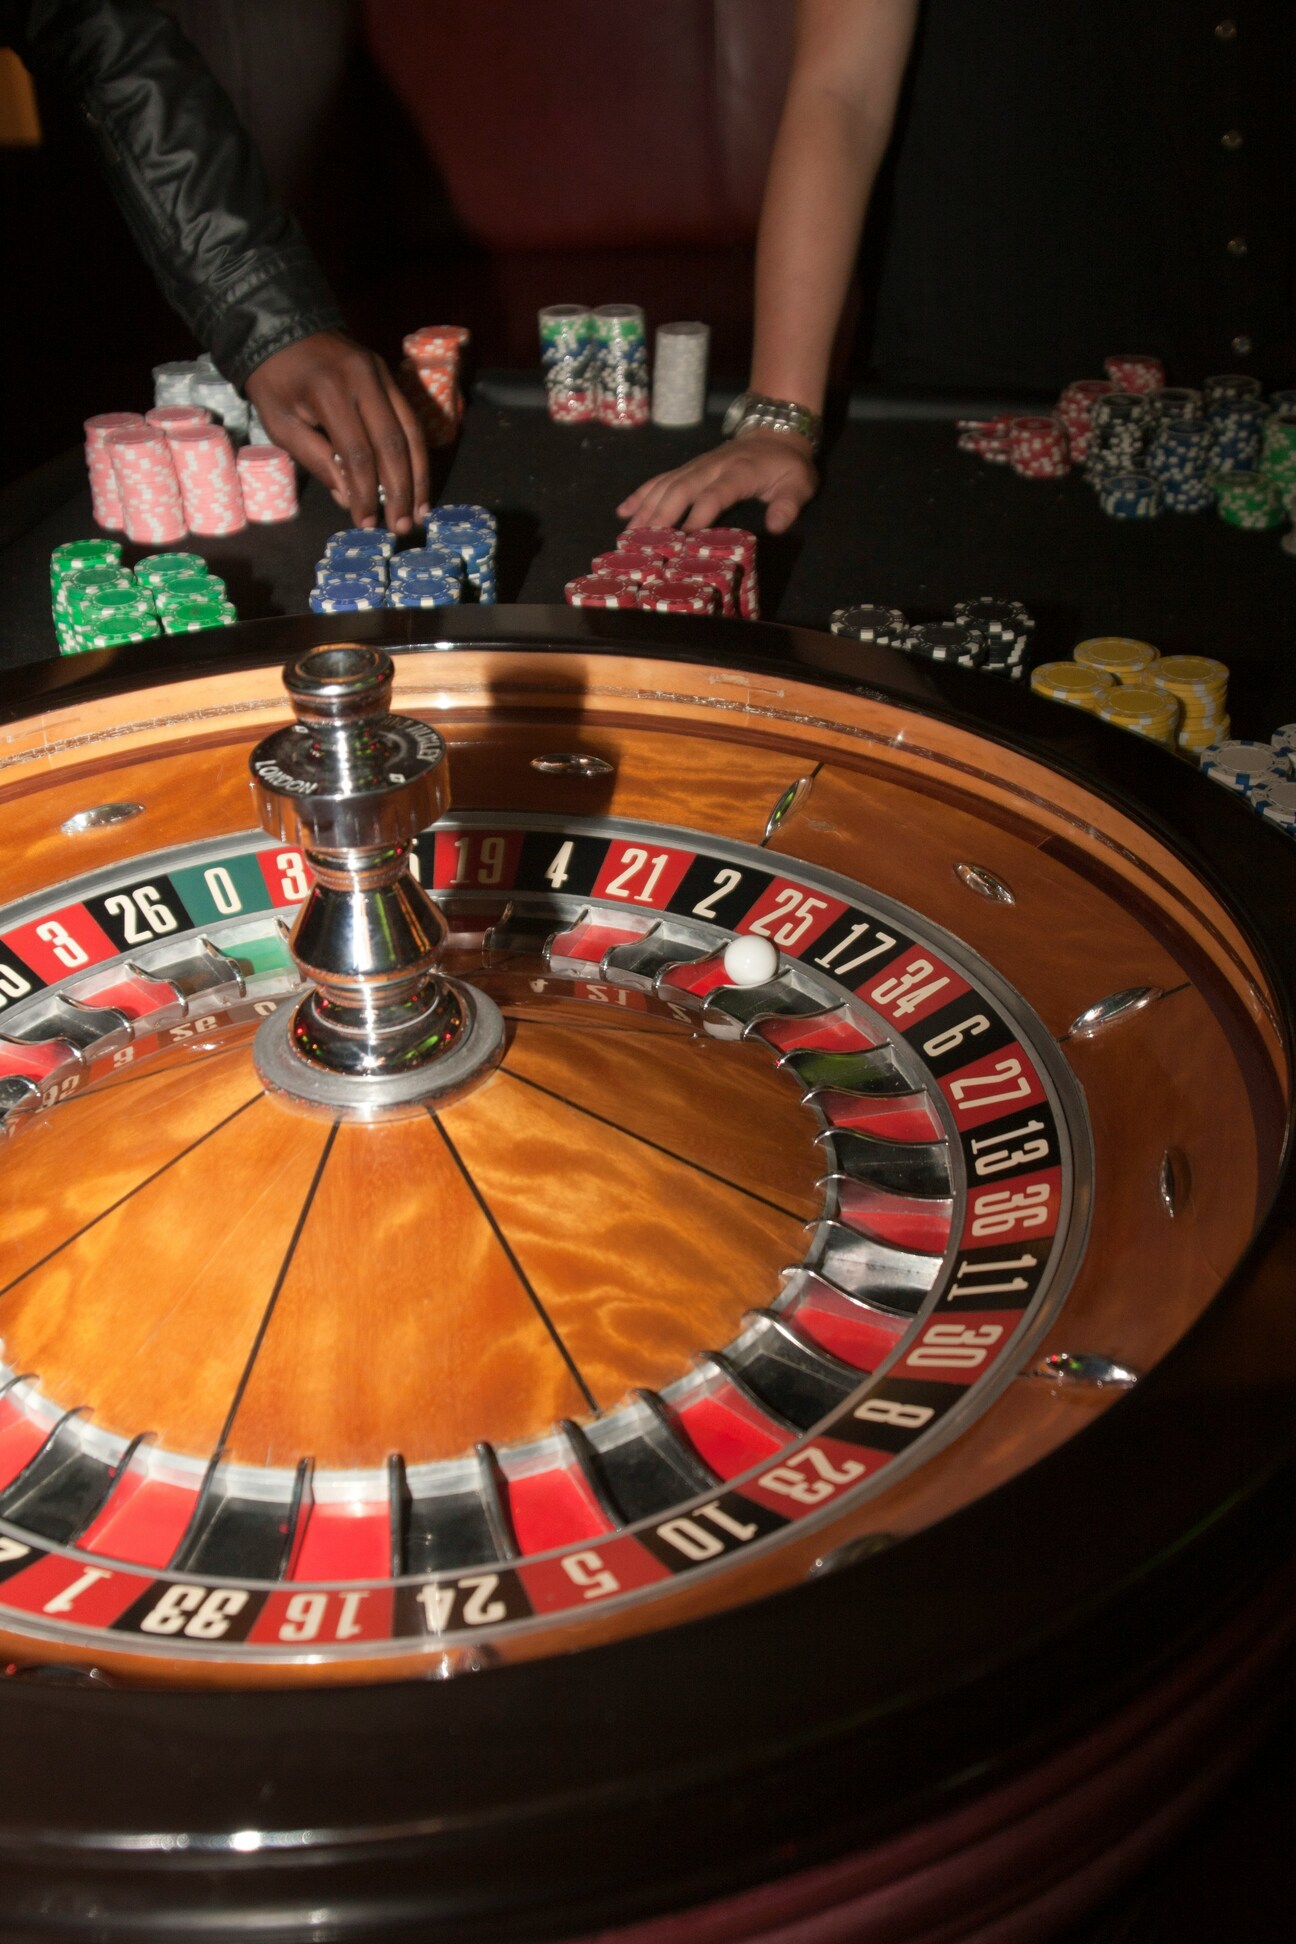 Scène de jeu de roulette au Casino, métaphore de l'addiction aux jeux d'argent